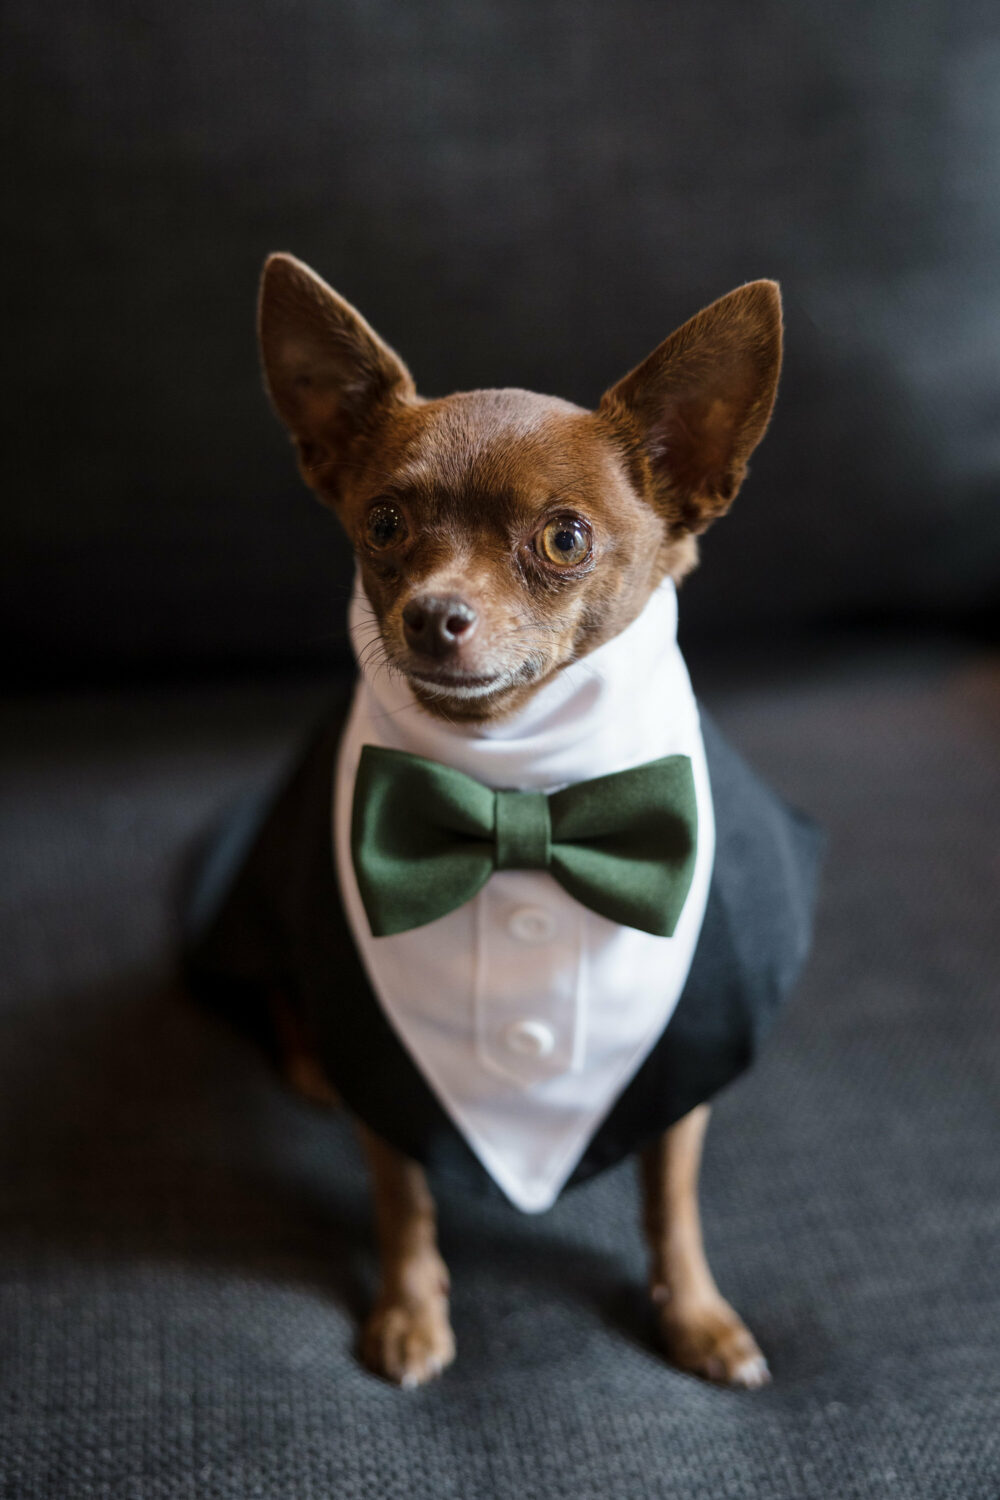 Wedding tuxedo for a chihuahua dog ring bearer.